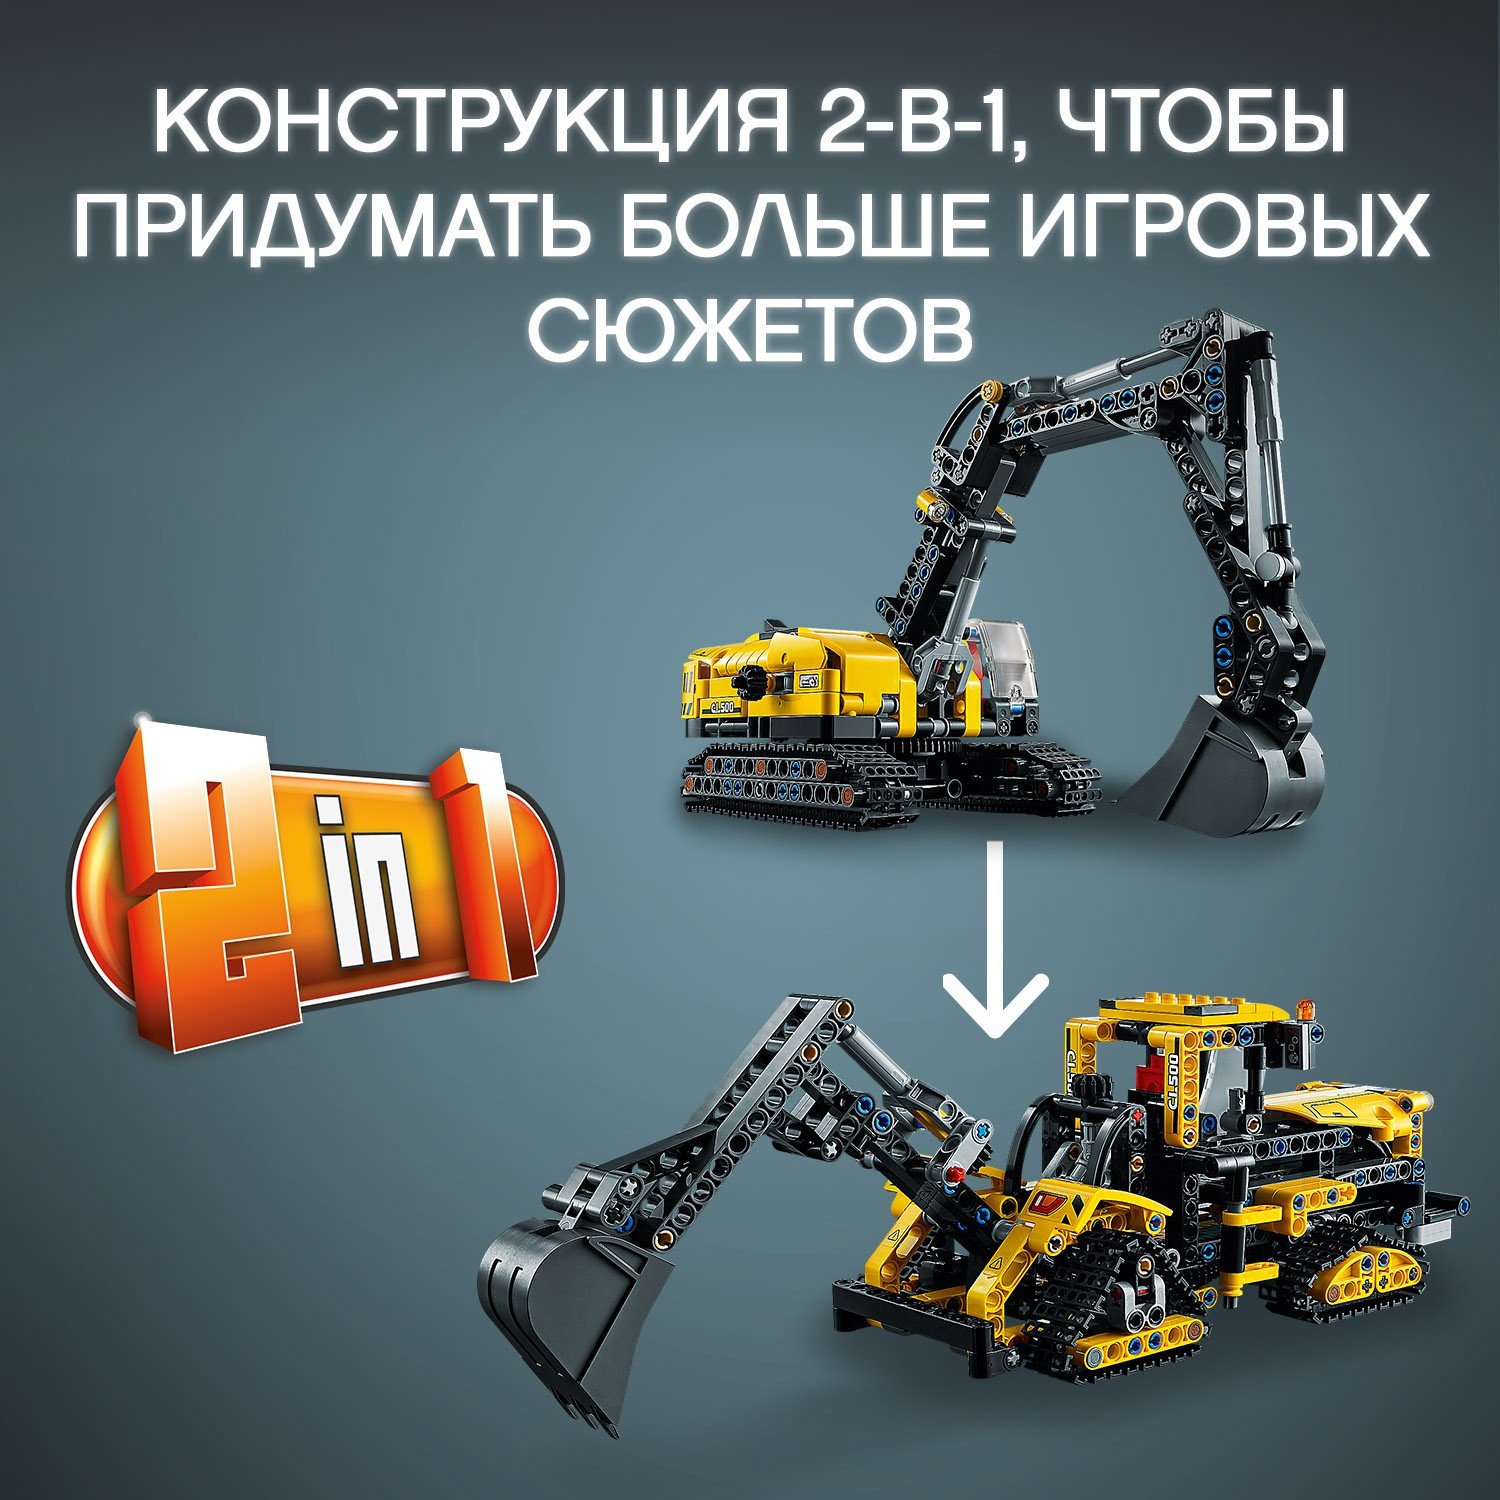 Конструктор LEGO Technic Тяжелый экскаватор 42121